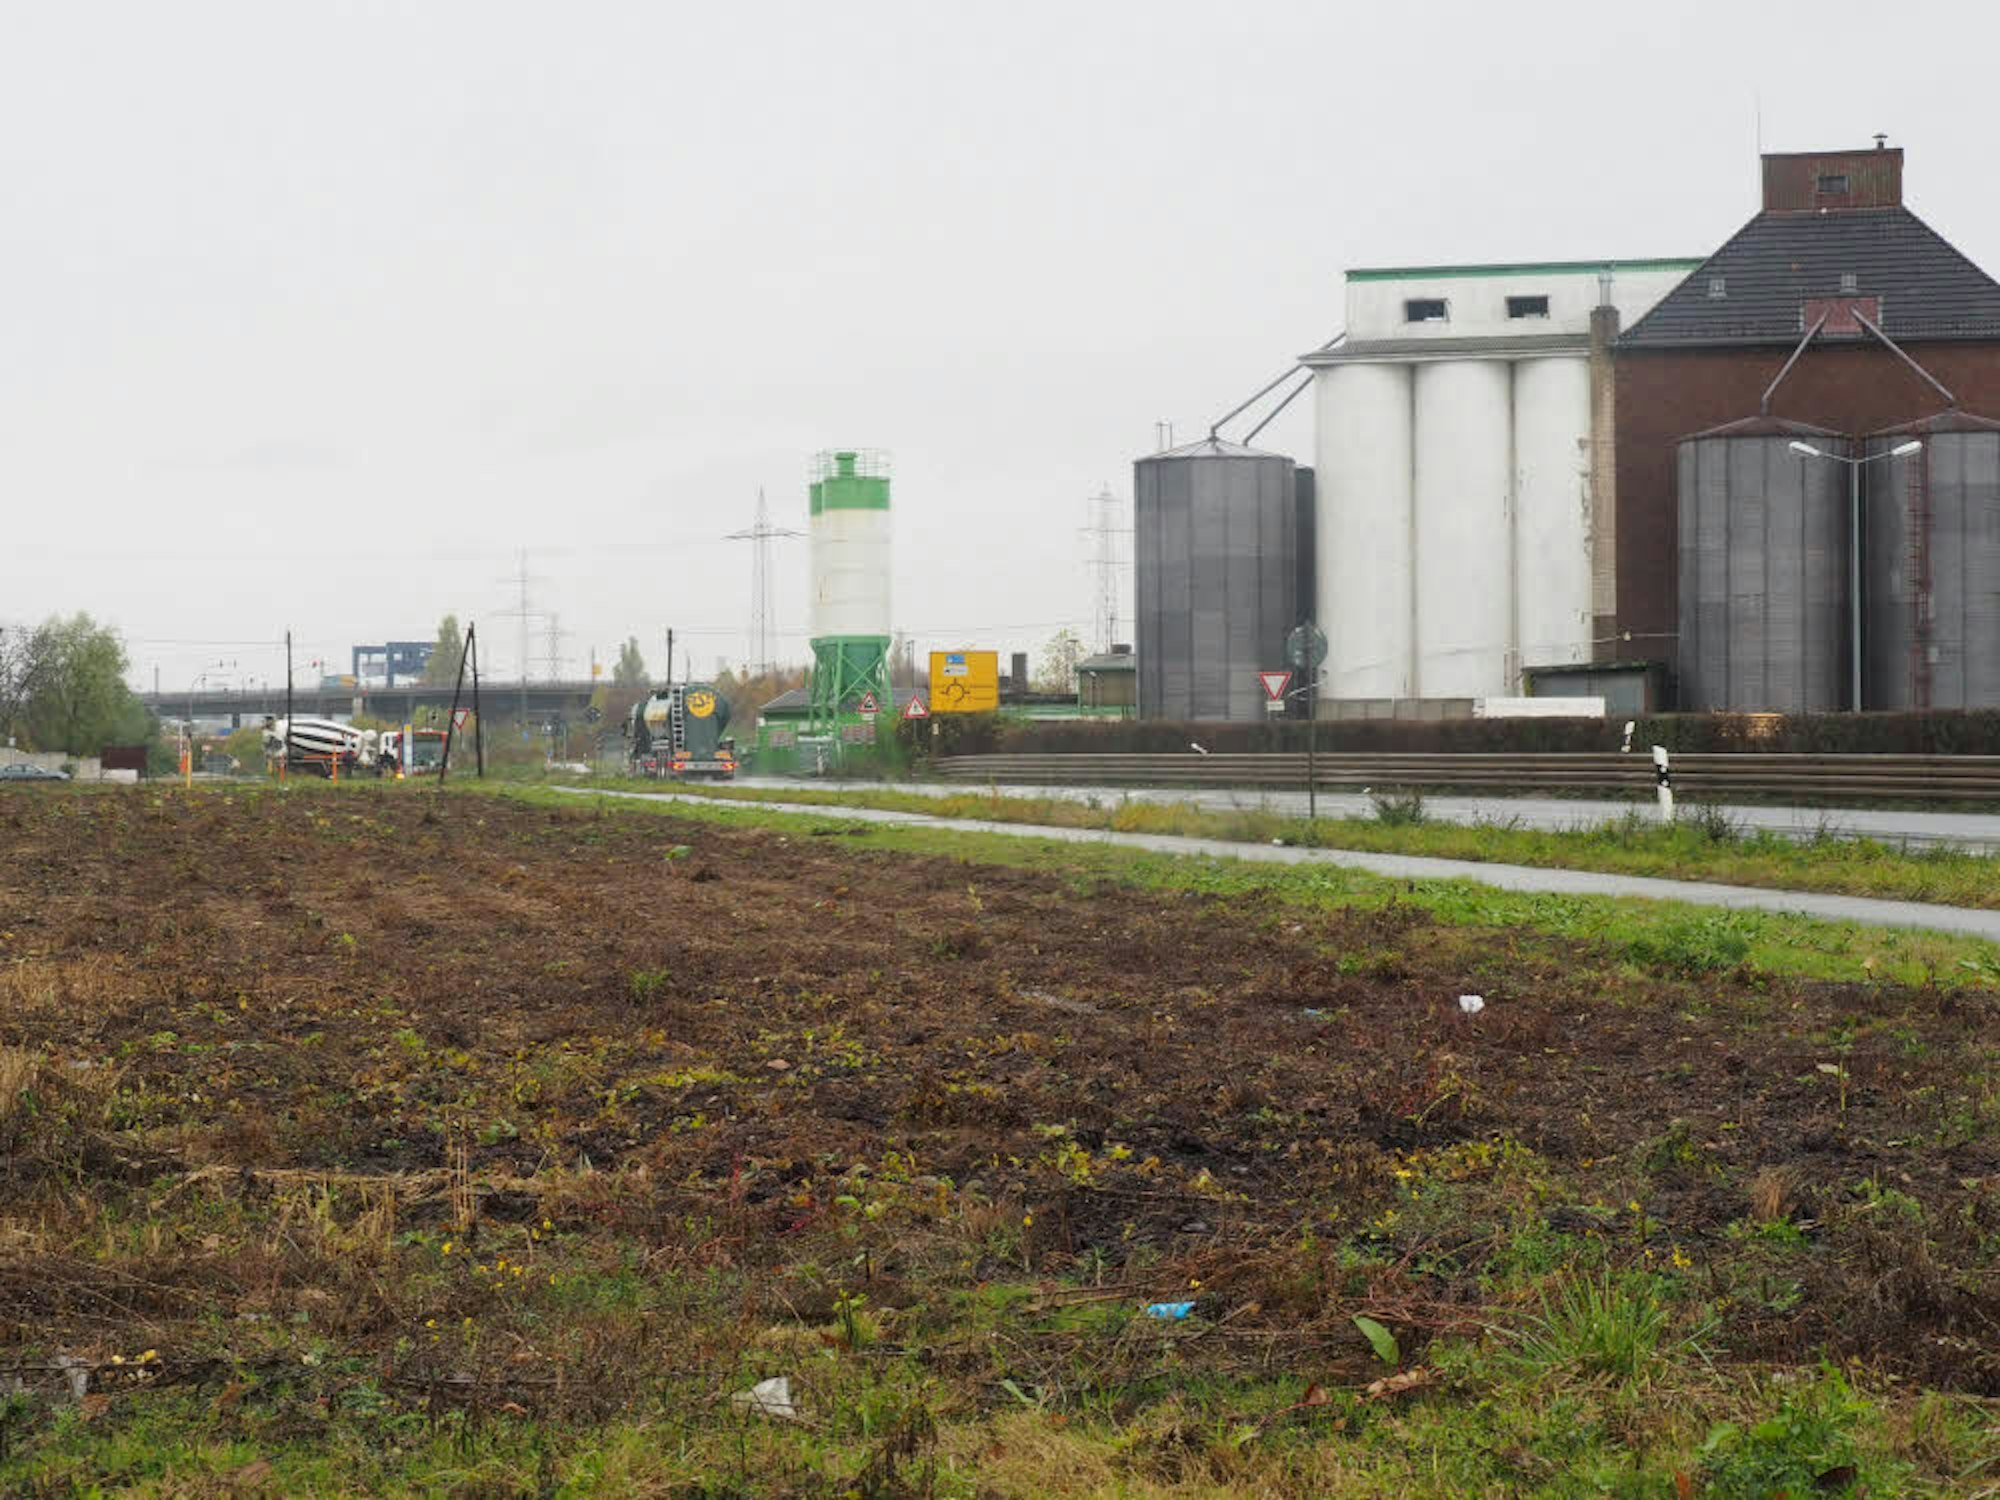 Die Kreisstraße 27 führt an der Rußfabrik Orion vorbei. Dort werden auch hochgiftige und explosive Chemikalien verarbeitet. Den Ausbau zur Bundesstraße lehnen die Stadt Hürth, Orion und der Landesbetrieb ab.